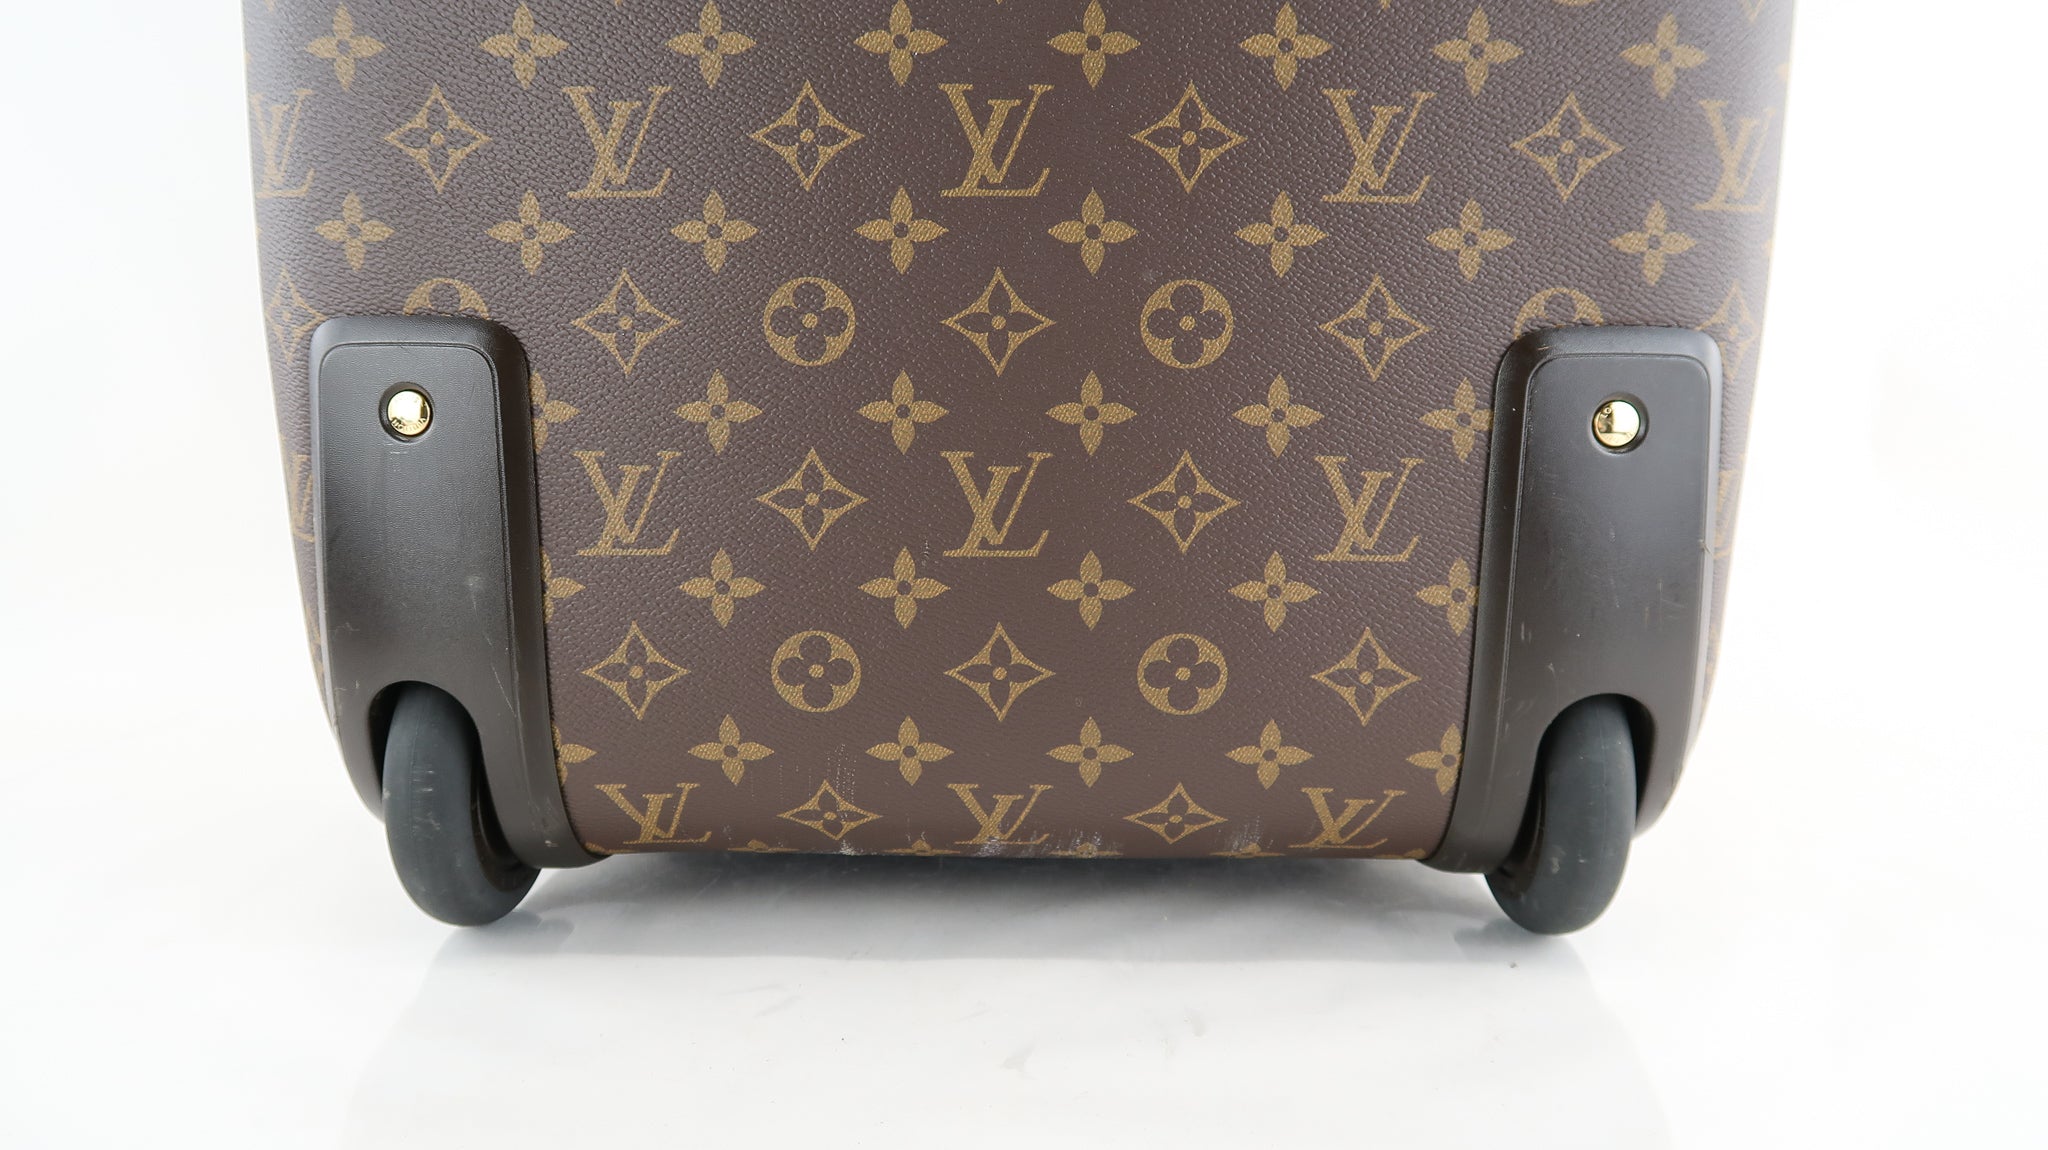 Louis Vuitton Monogram Canvas Pegase Luggage 50